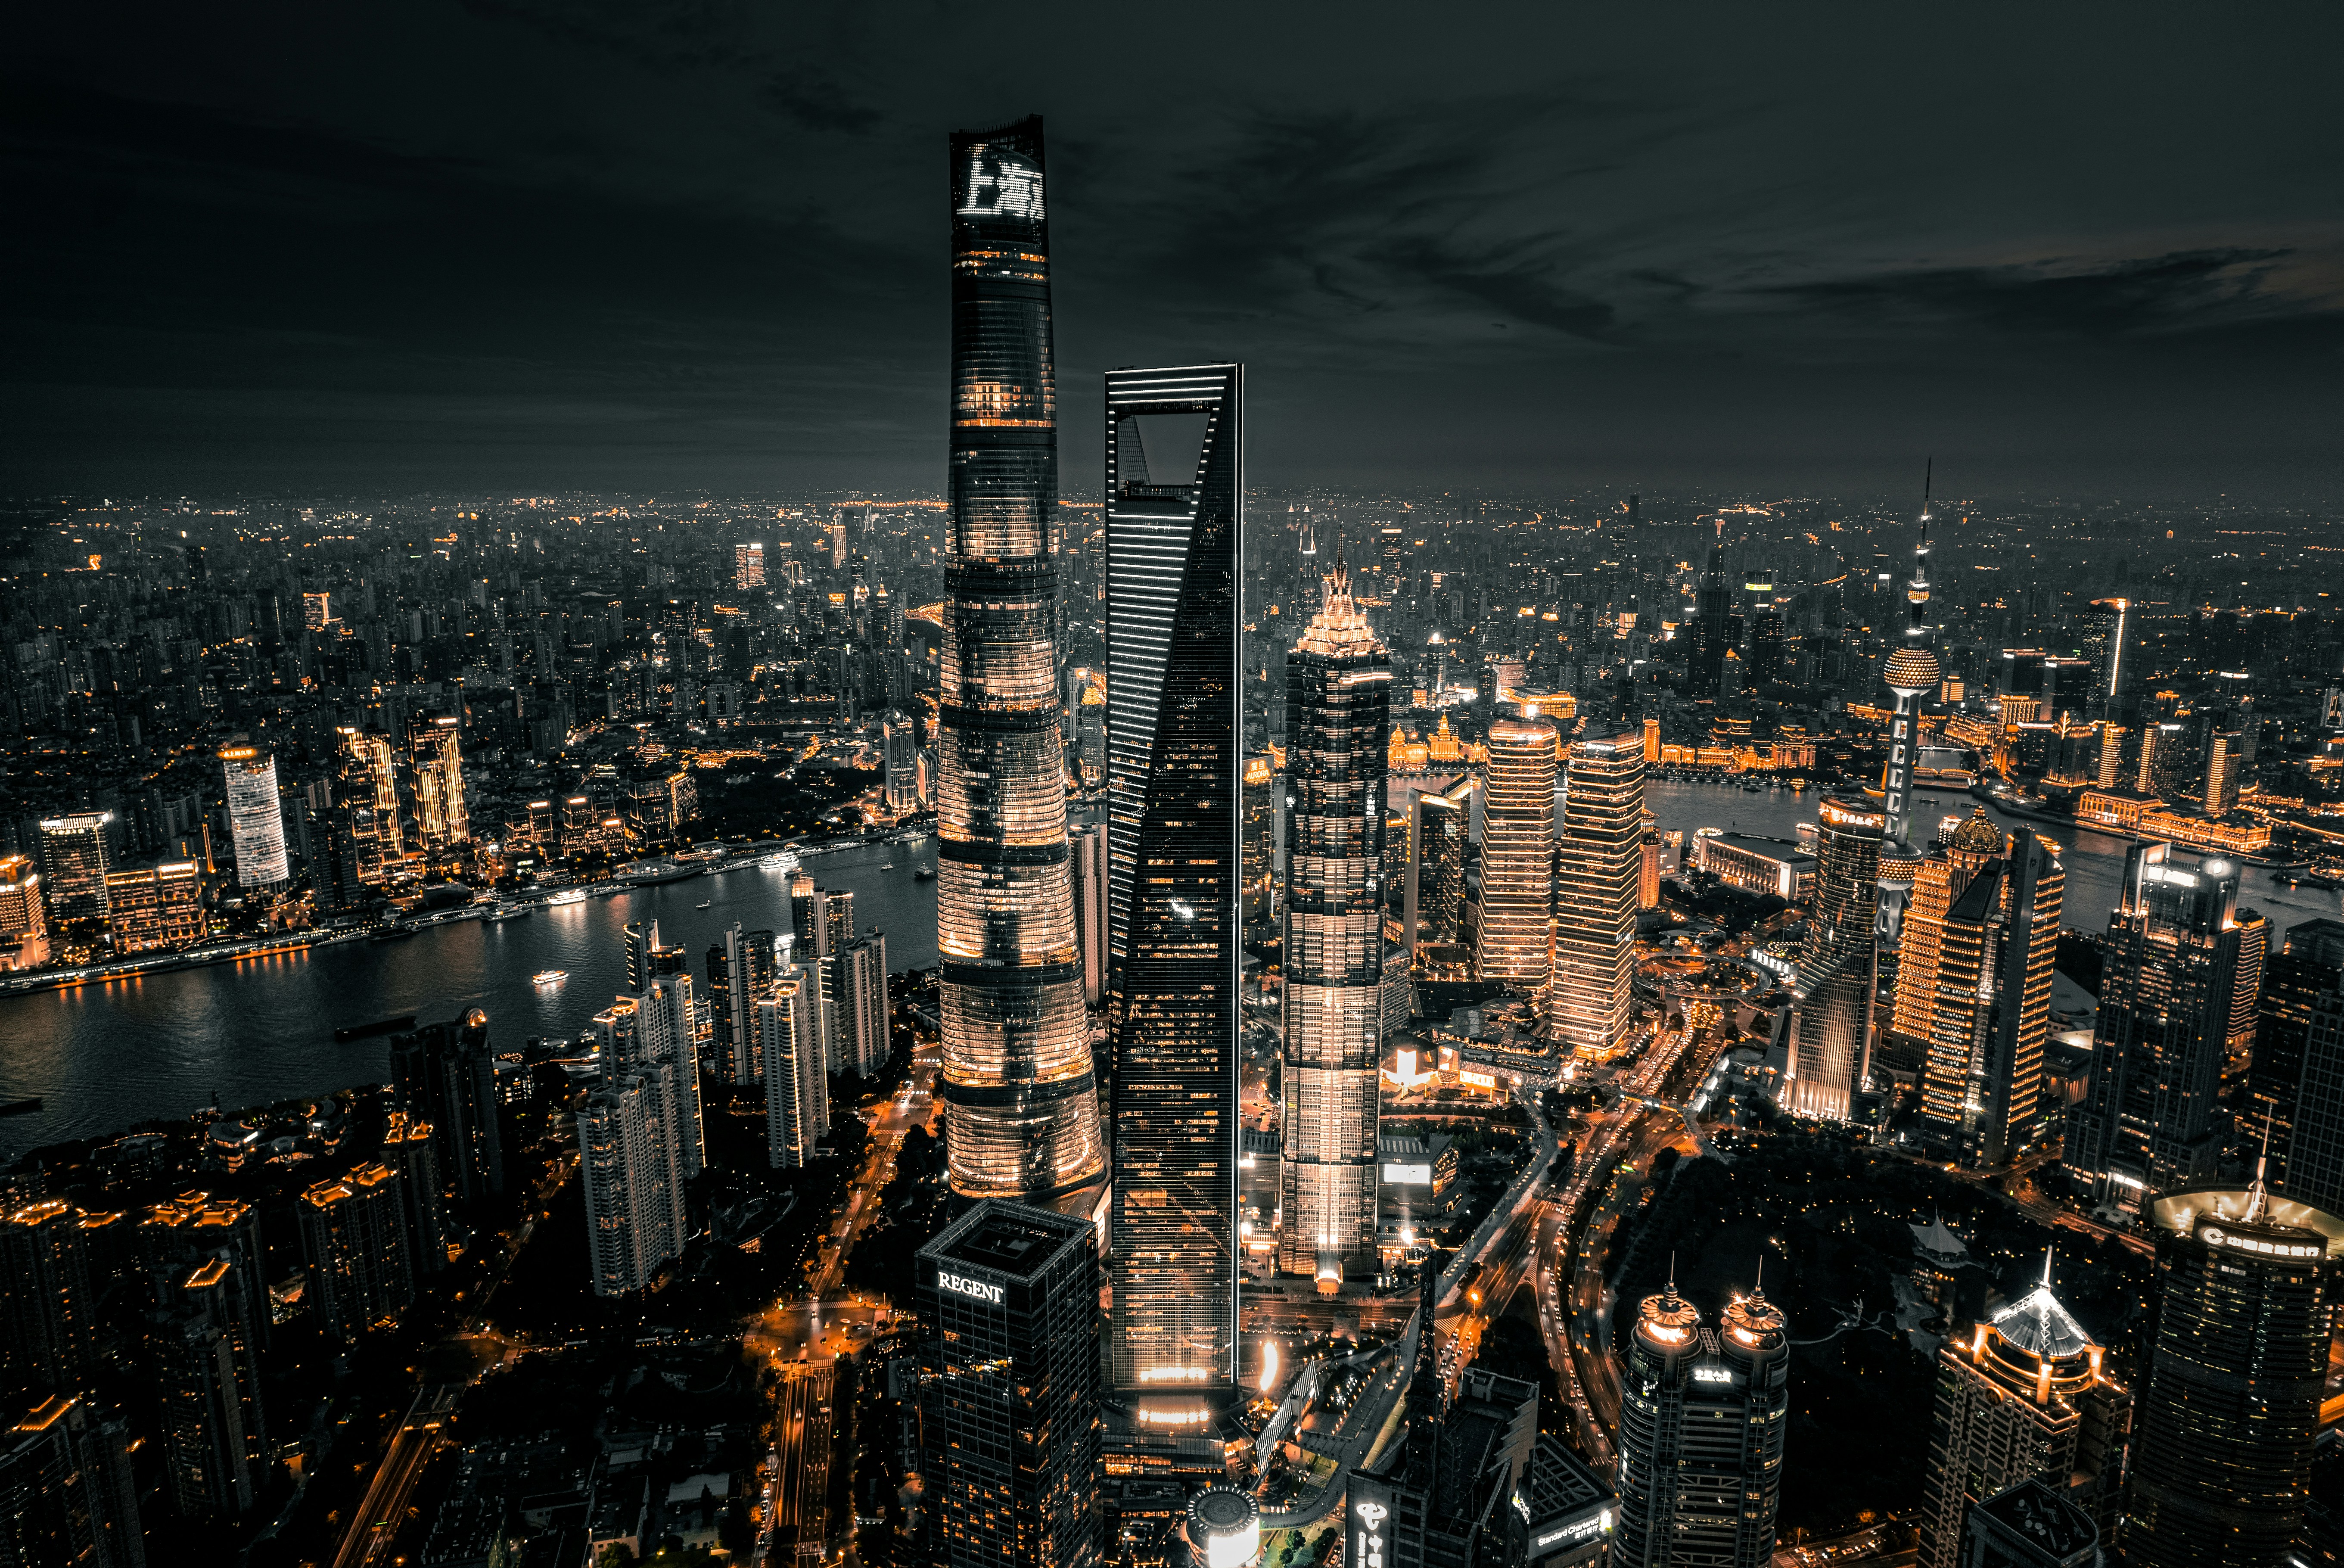 Shanghai dan keindahannya jika dilihat dari pemandangan di atas